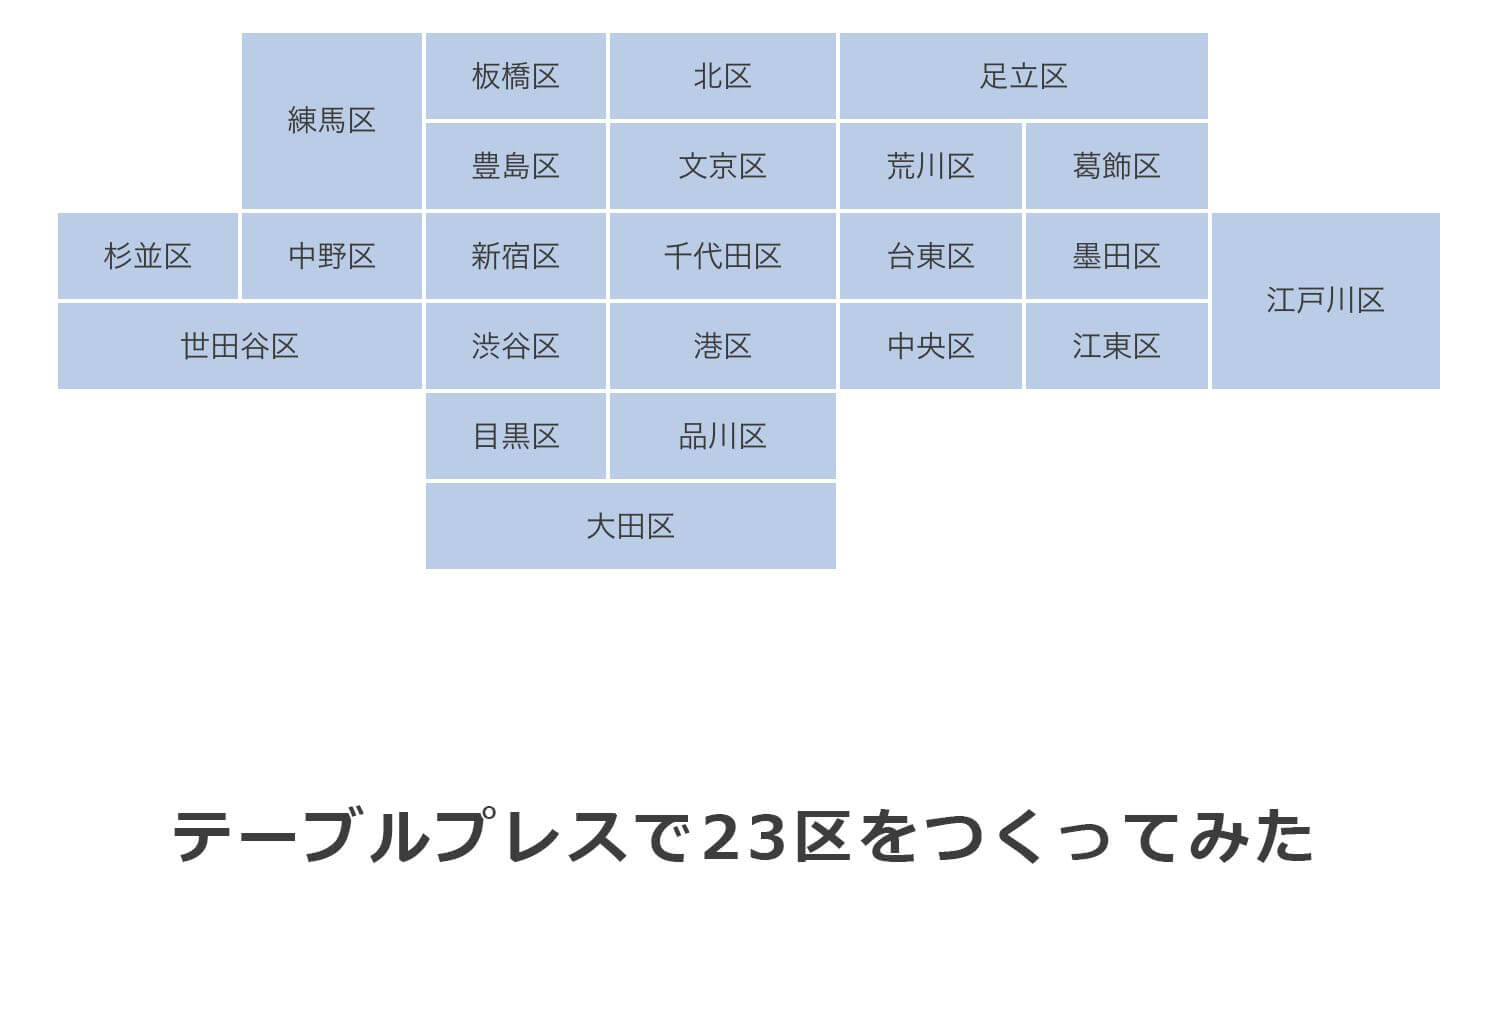 『テーブルプレスで東京23区を作ってみた』というブログの説明画像です。